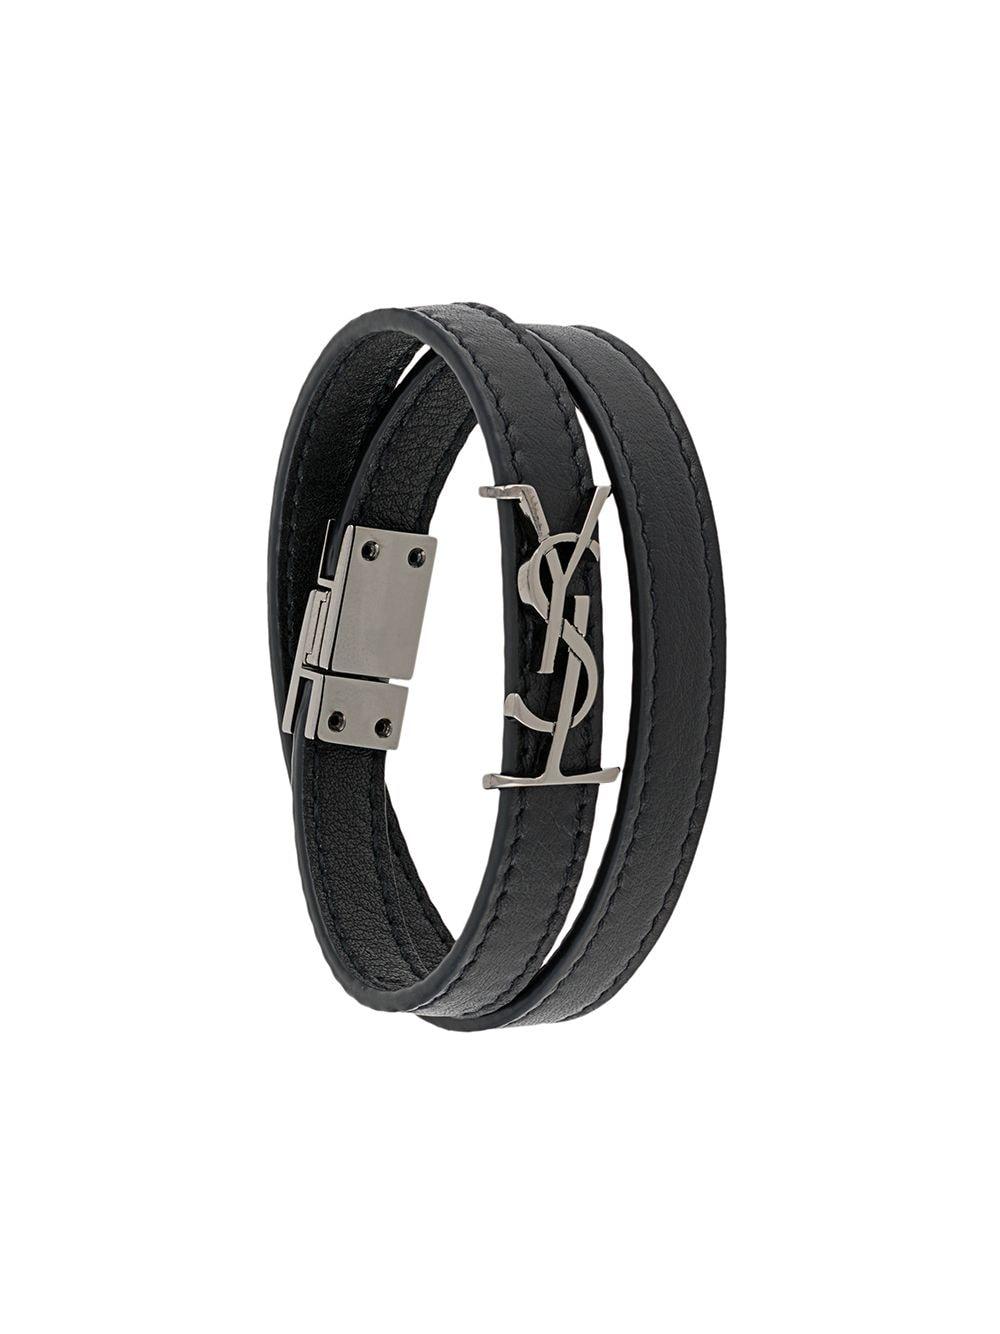 Saint Laurent Leather Opyum Double-wrap Bracelet in Black for Men - Lyst